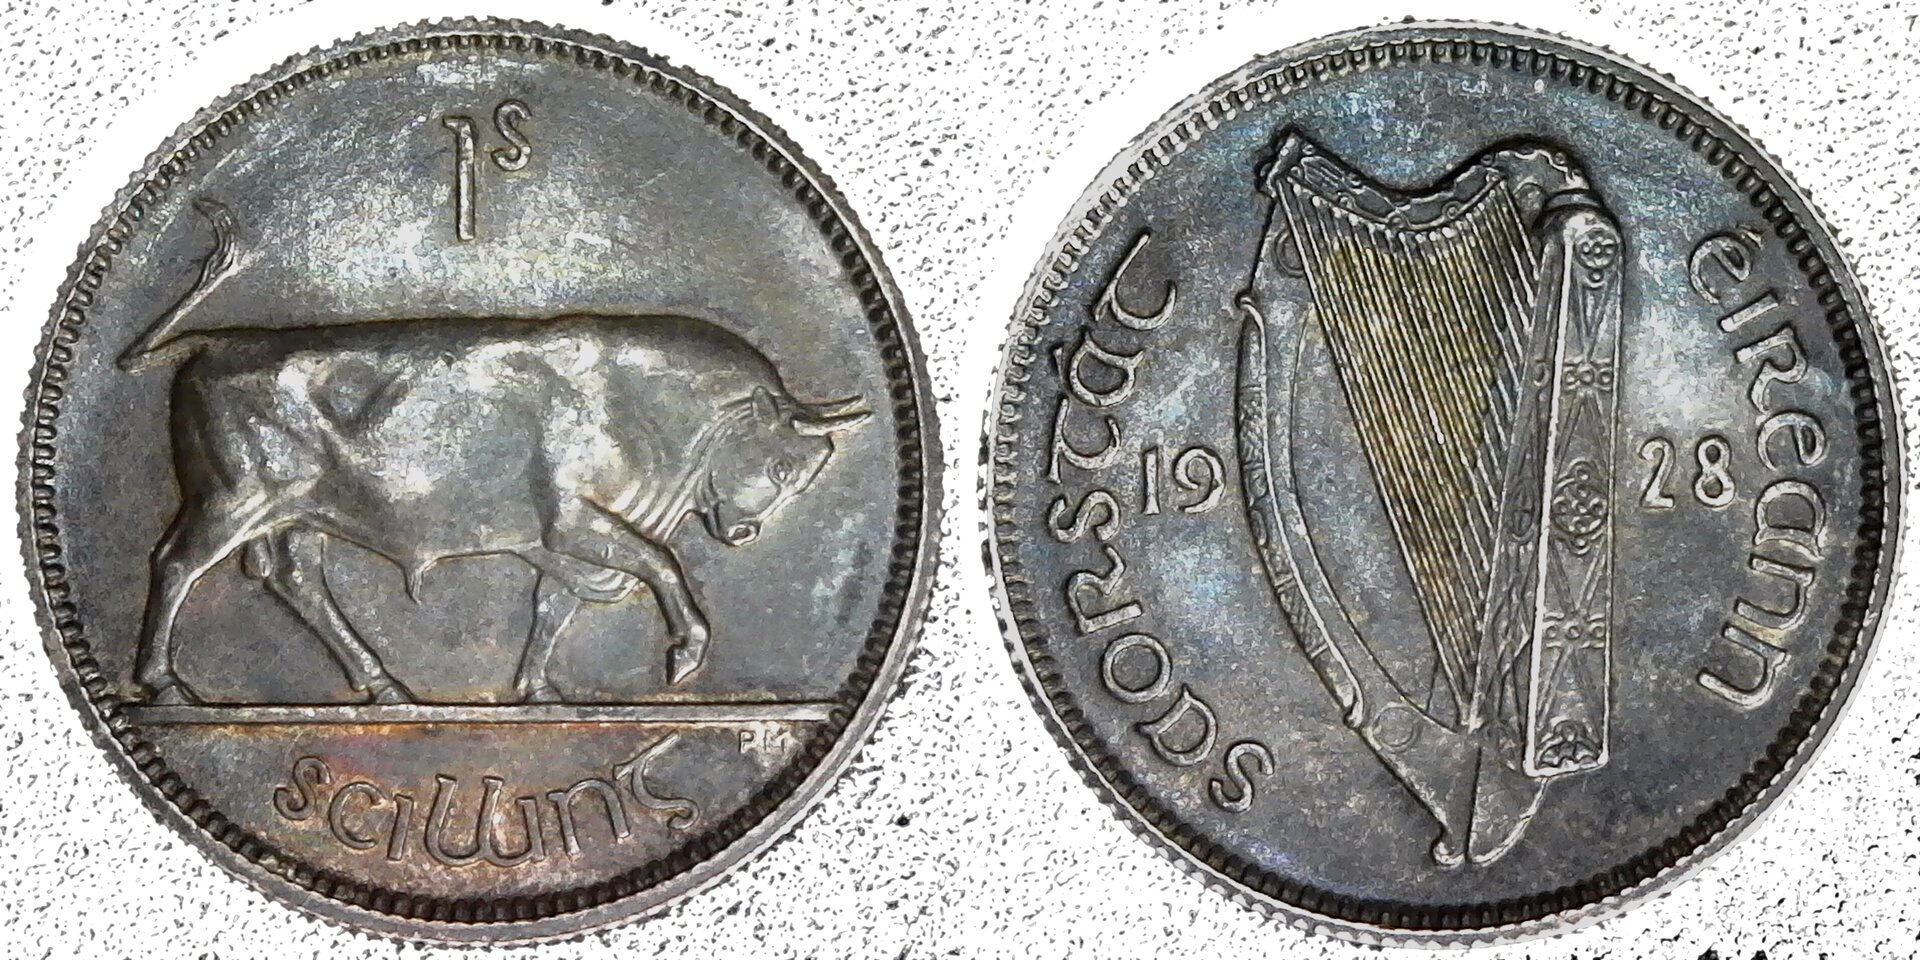 Ireland 1 Shilling 1928 obv B-side-cutout.jpg